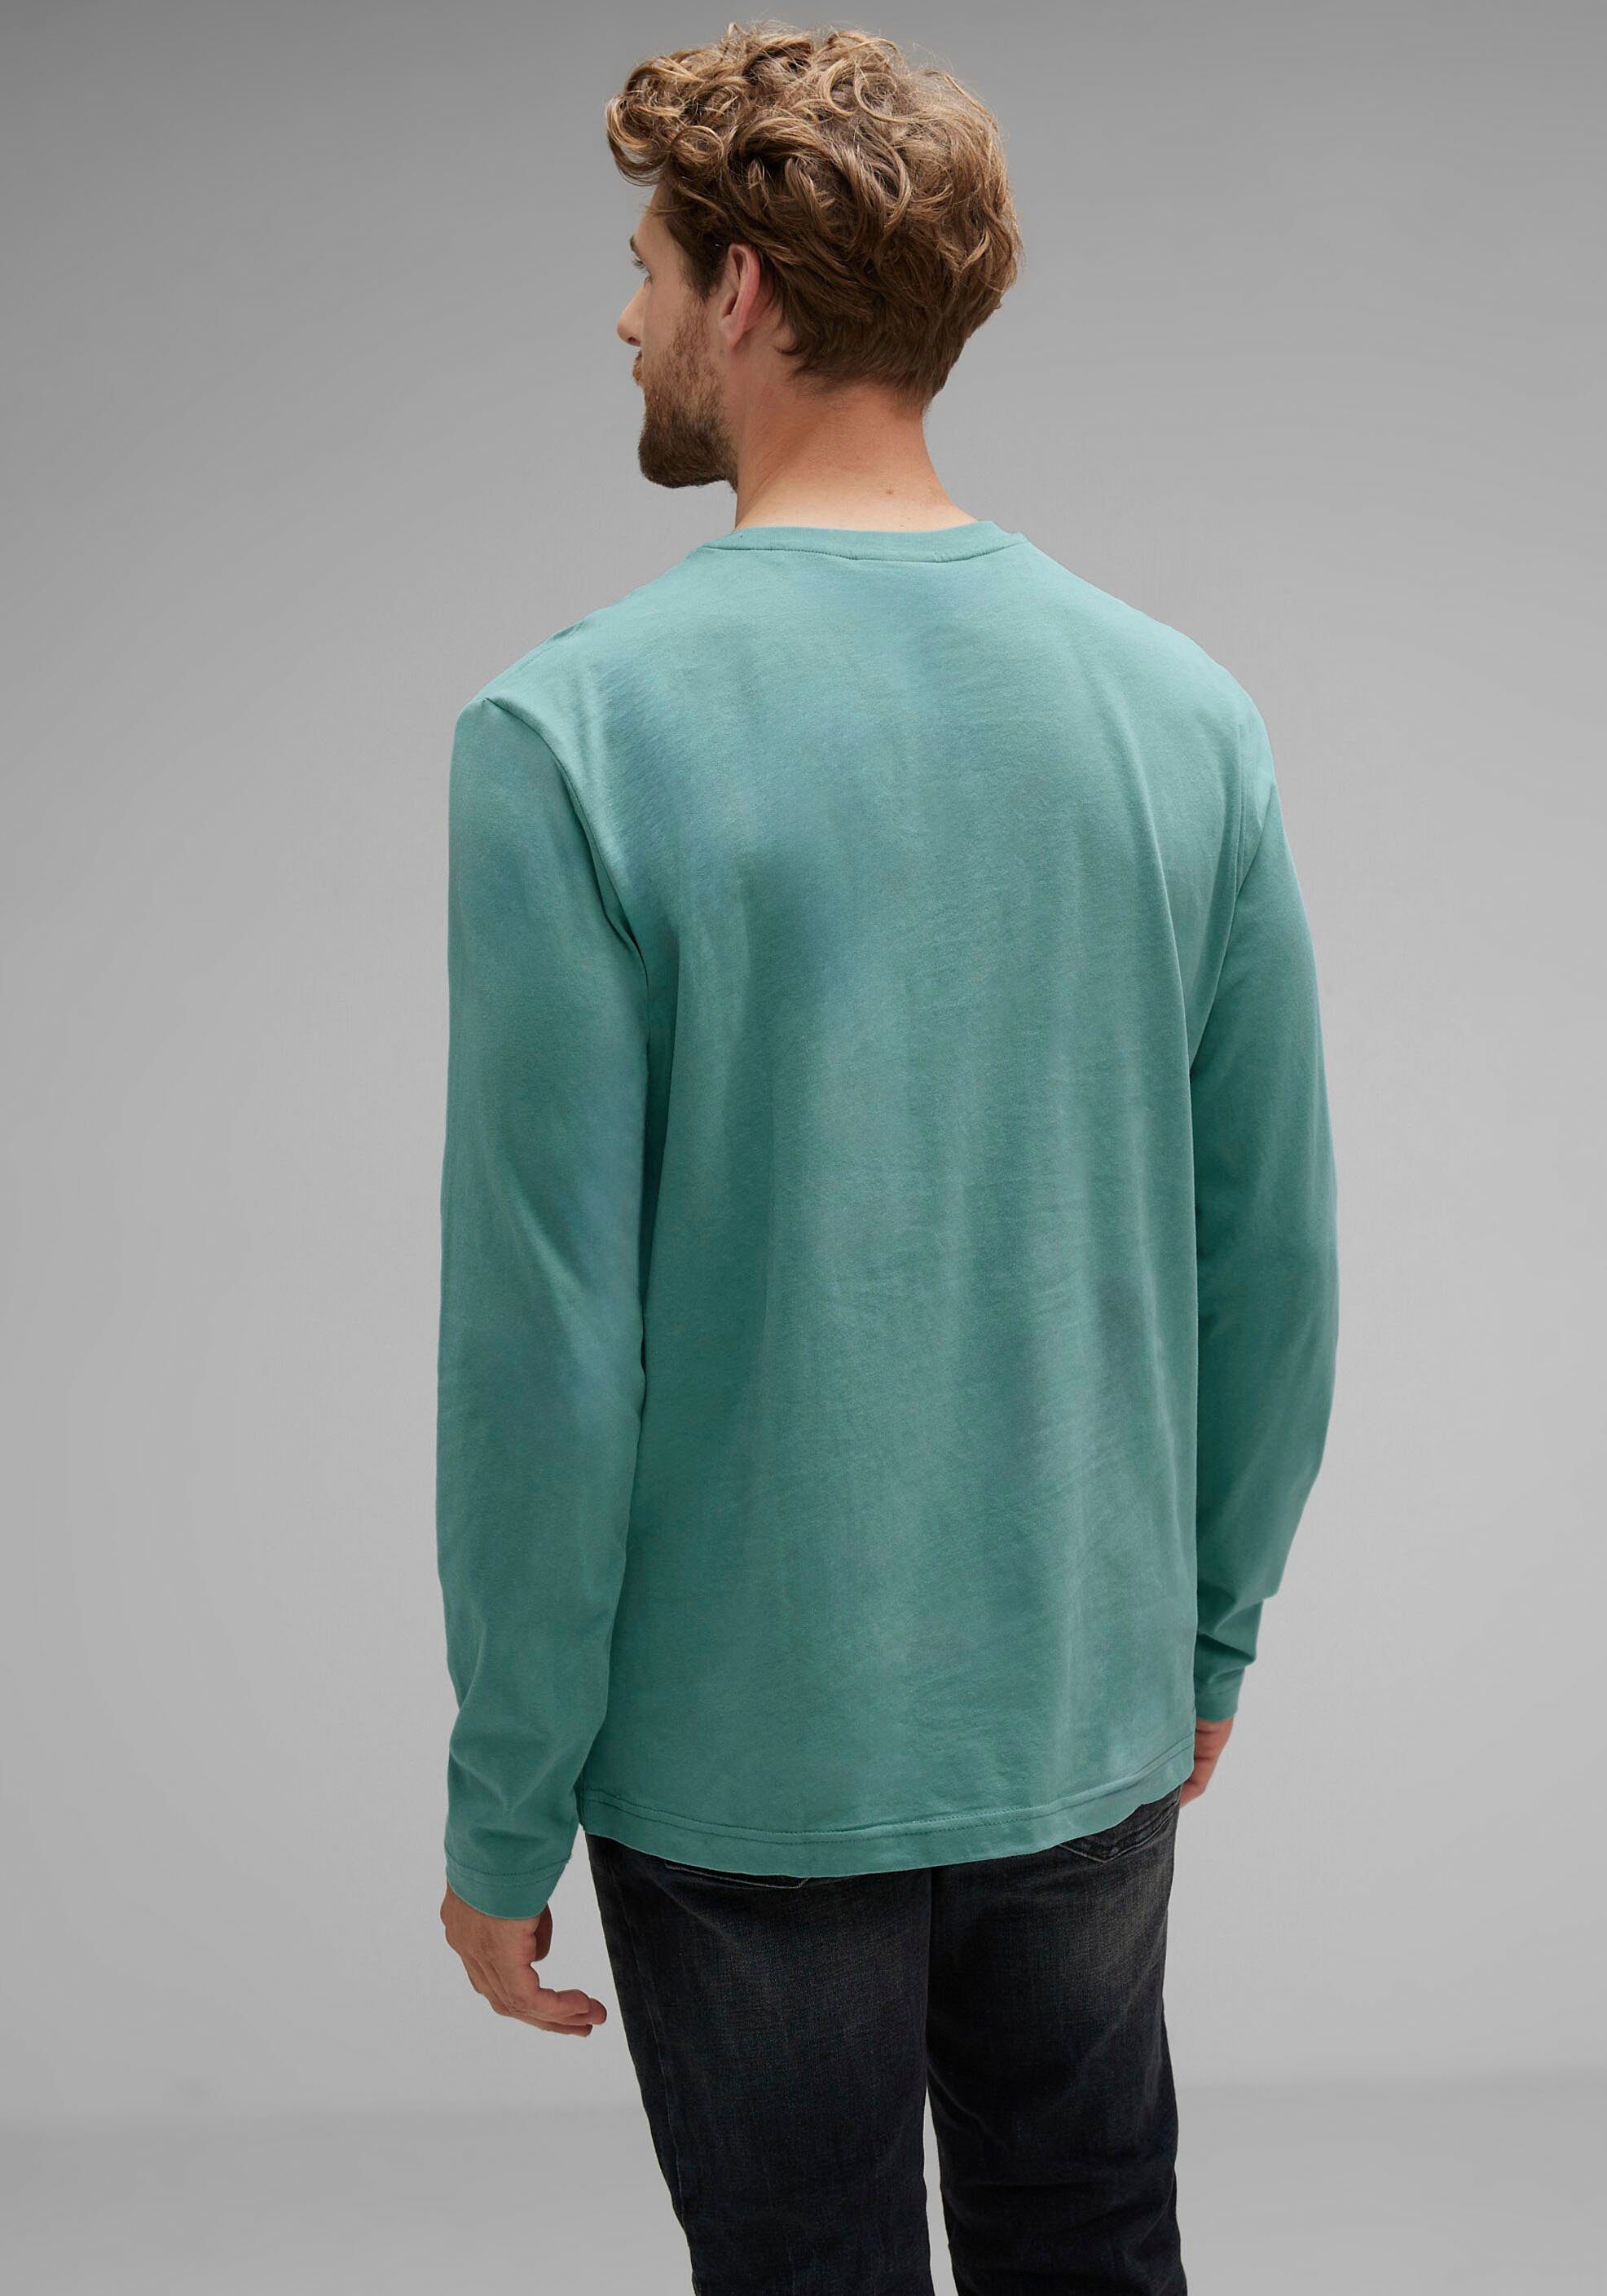 Langarmshirt mit turquoise ONE MEN green STREET Brustprint